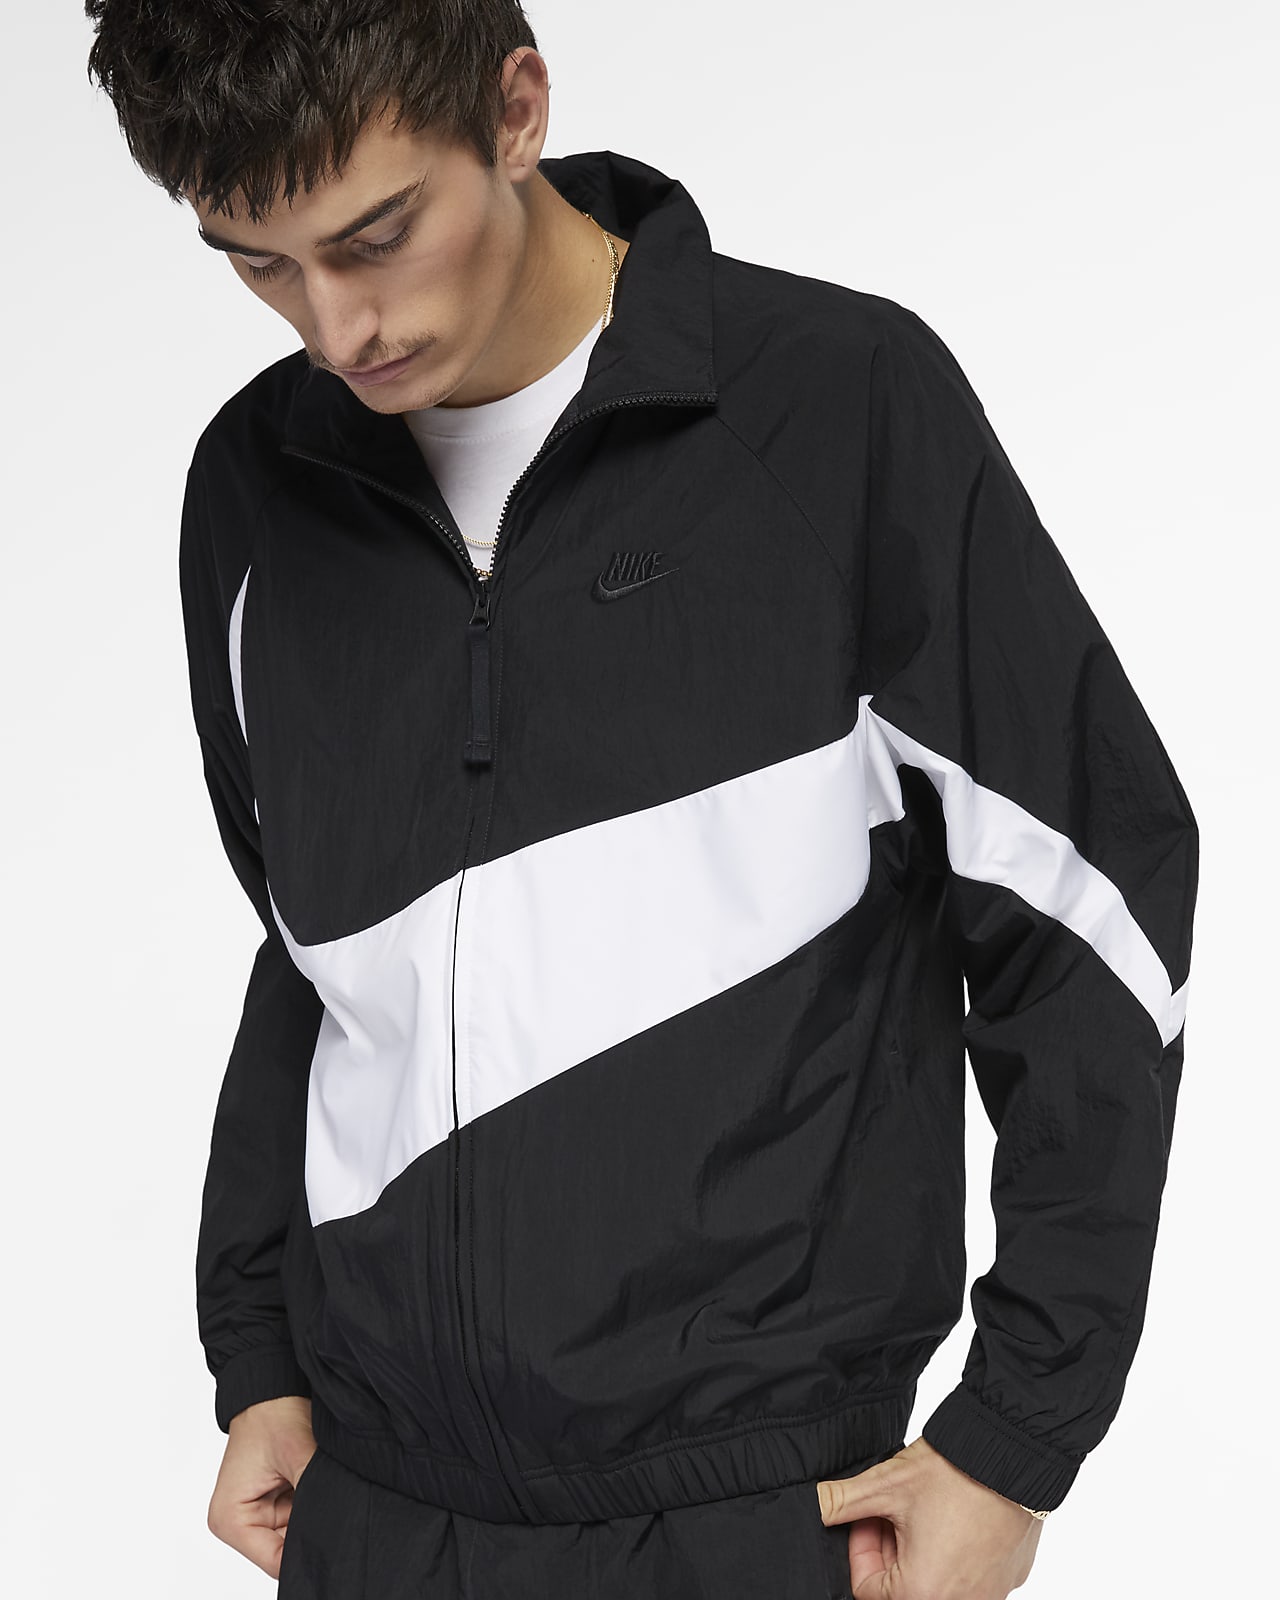 Nike Sportswear Men's Woven Jacket. Nike ID